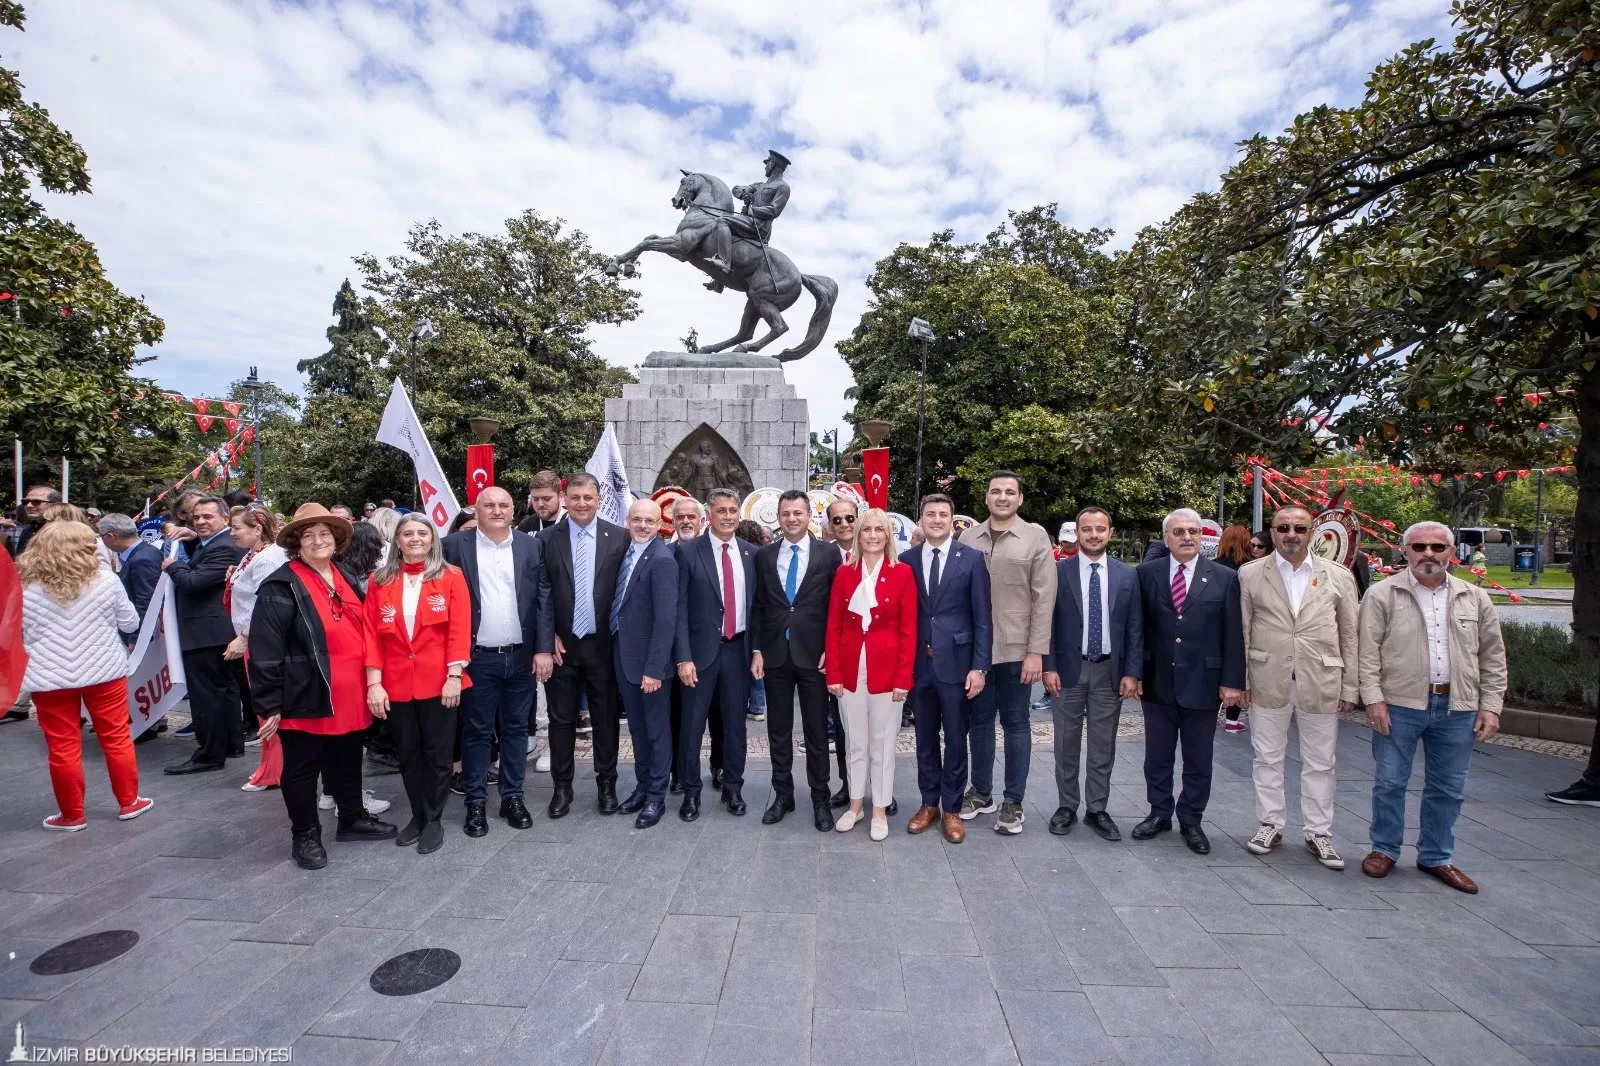 İzmir Büyükşehir Belediye Başkanı Dr. Cemil Tugay, Cumhuriyet Halk Partisi (CHP) Samsun İl Başkanlığı'nın 19 Mayıs'ın 105. yıl dönümü için düzenlediği törene katıldı. 